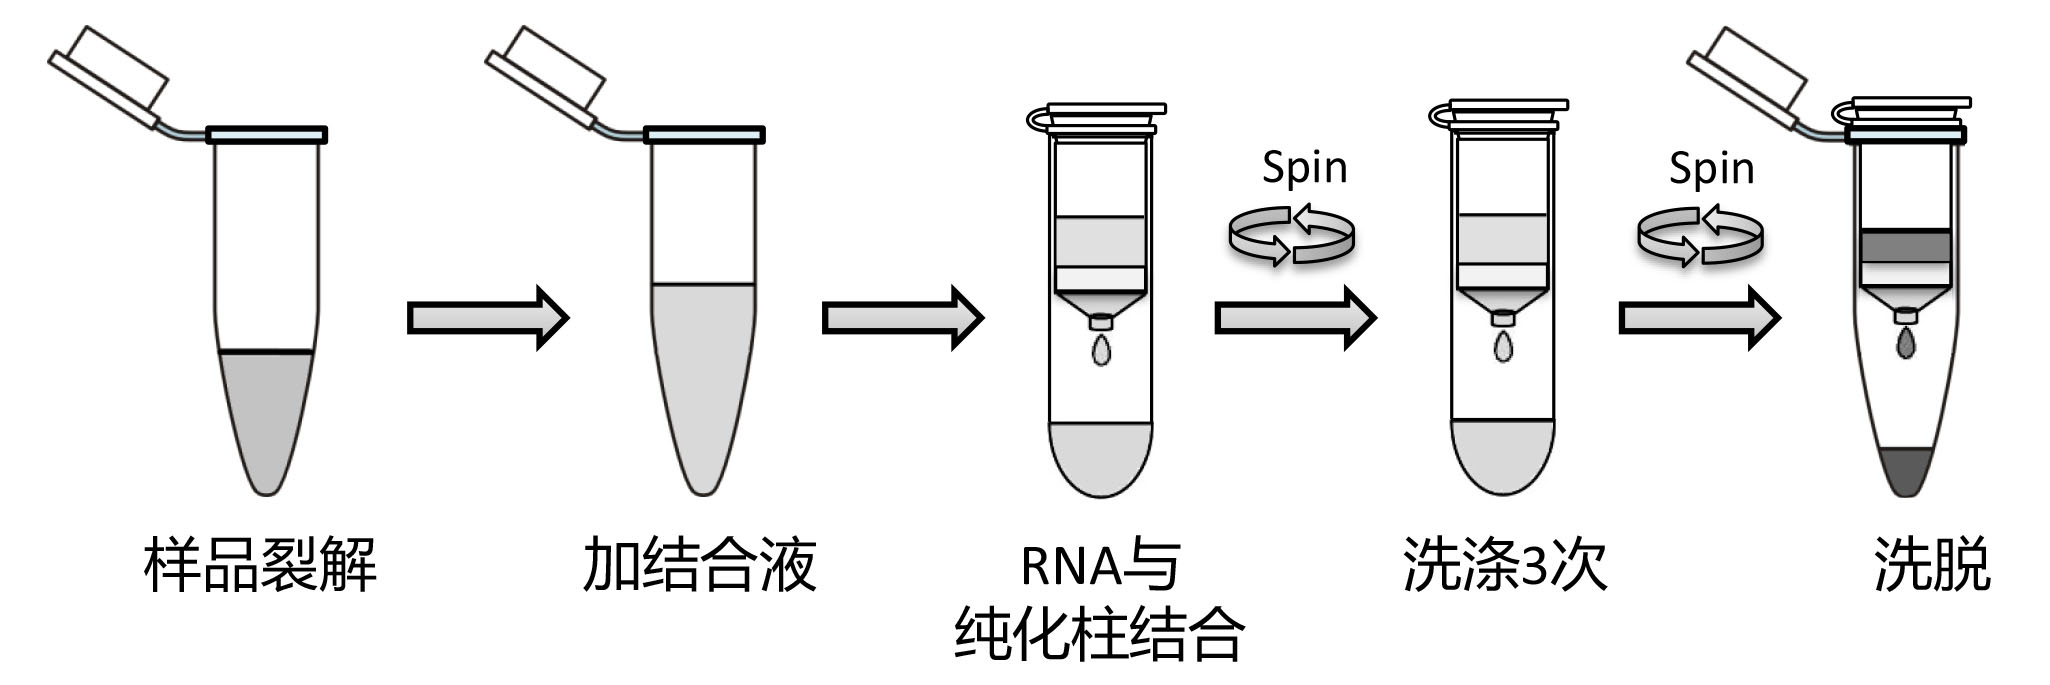 动物RNA提取试剂盒(离心吸附柱式)